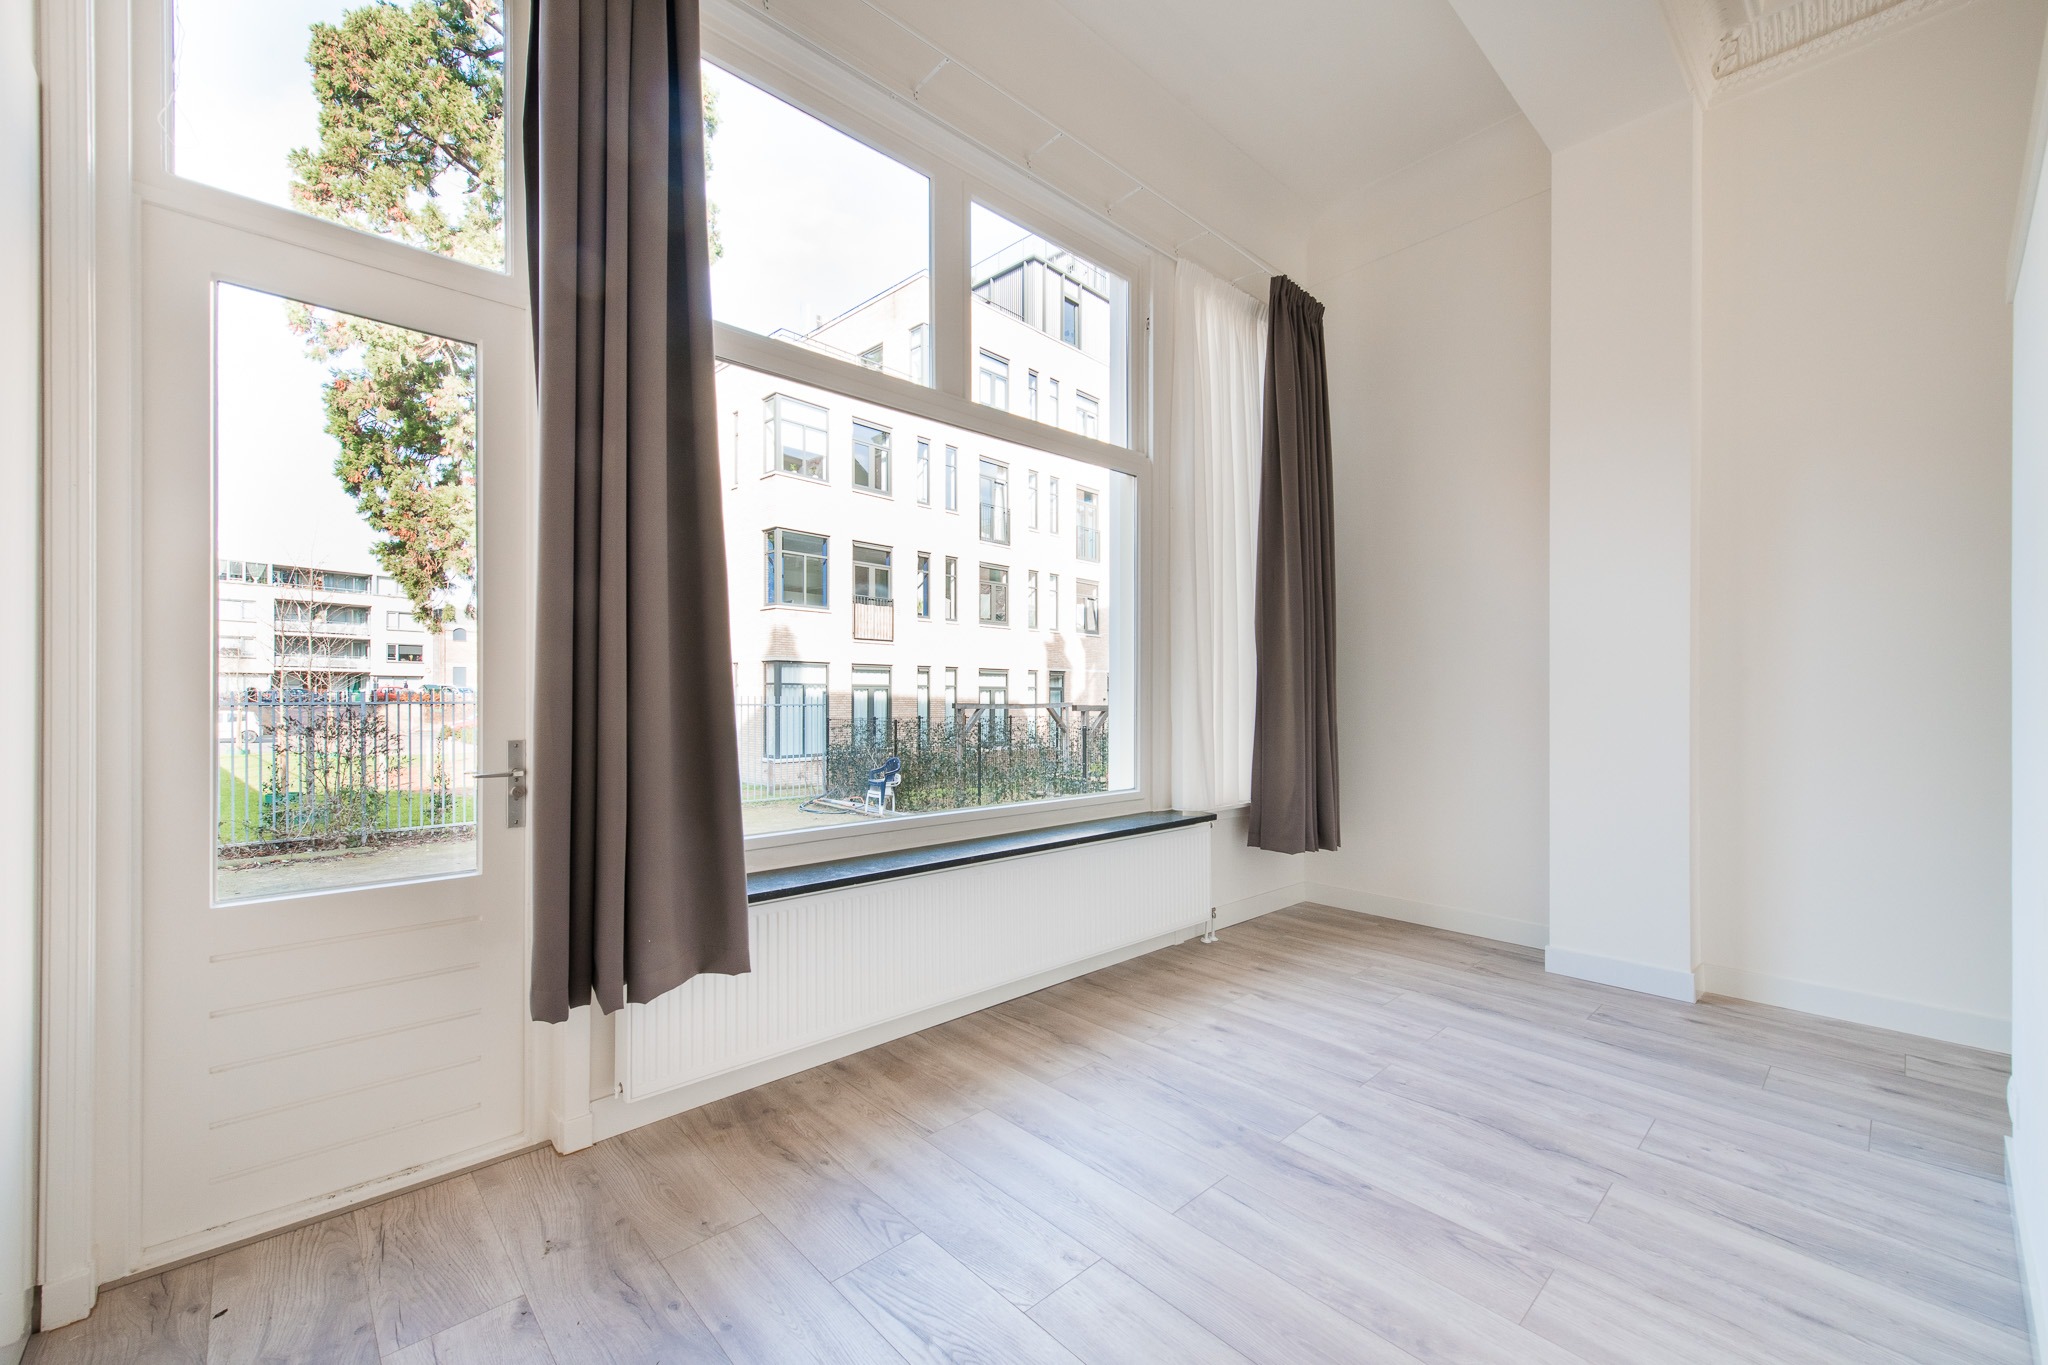 Woning / appartement - Arnhem - Velperweg 15-1 t/m 15-10